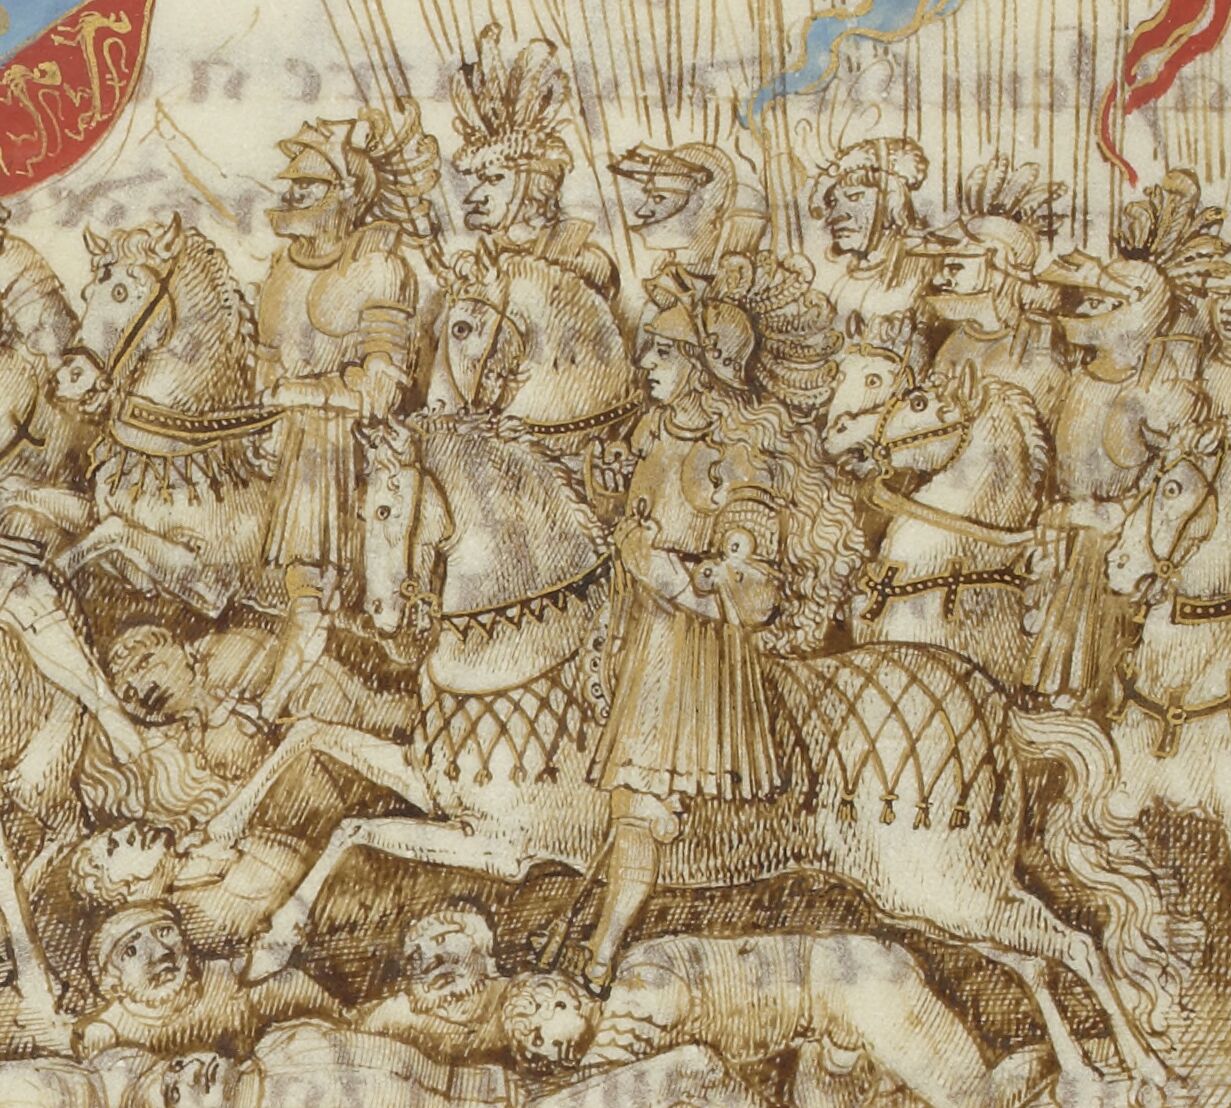 Jeanne d’Arc in battle